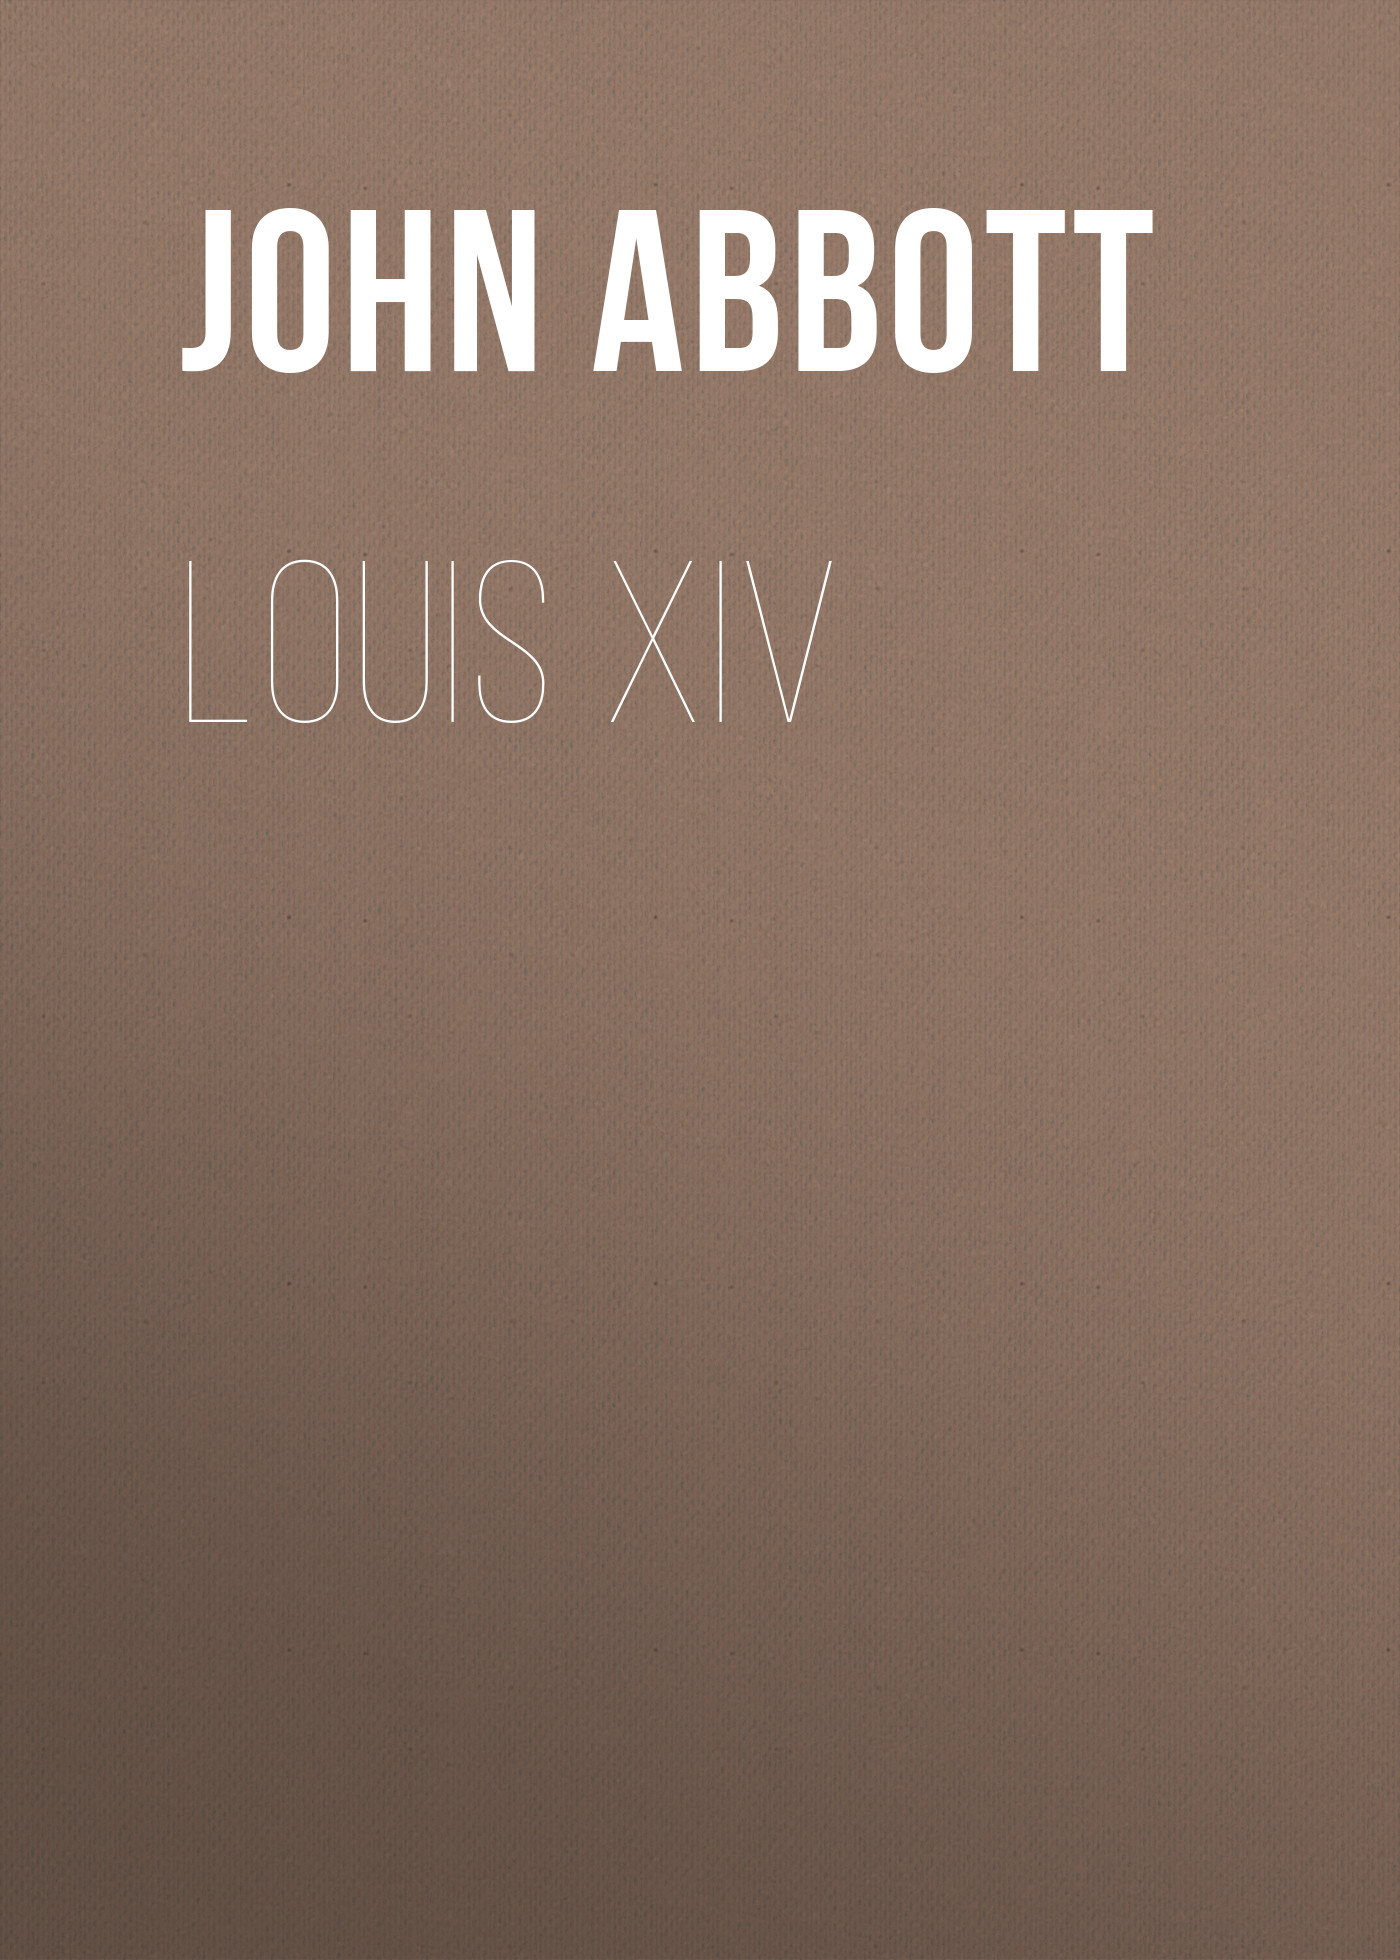 Книга Louis XIV из серии , созданная John Abbott, может относится к жанру Зарубежная старинная литература, Зарубежная классика, Историческая литература. Стоимость электронной книги Louis XIV с идентификатором 24173188 составляет 0 руб.